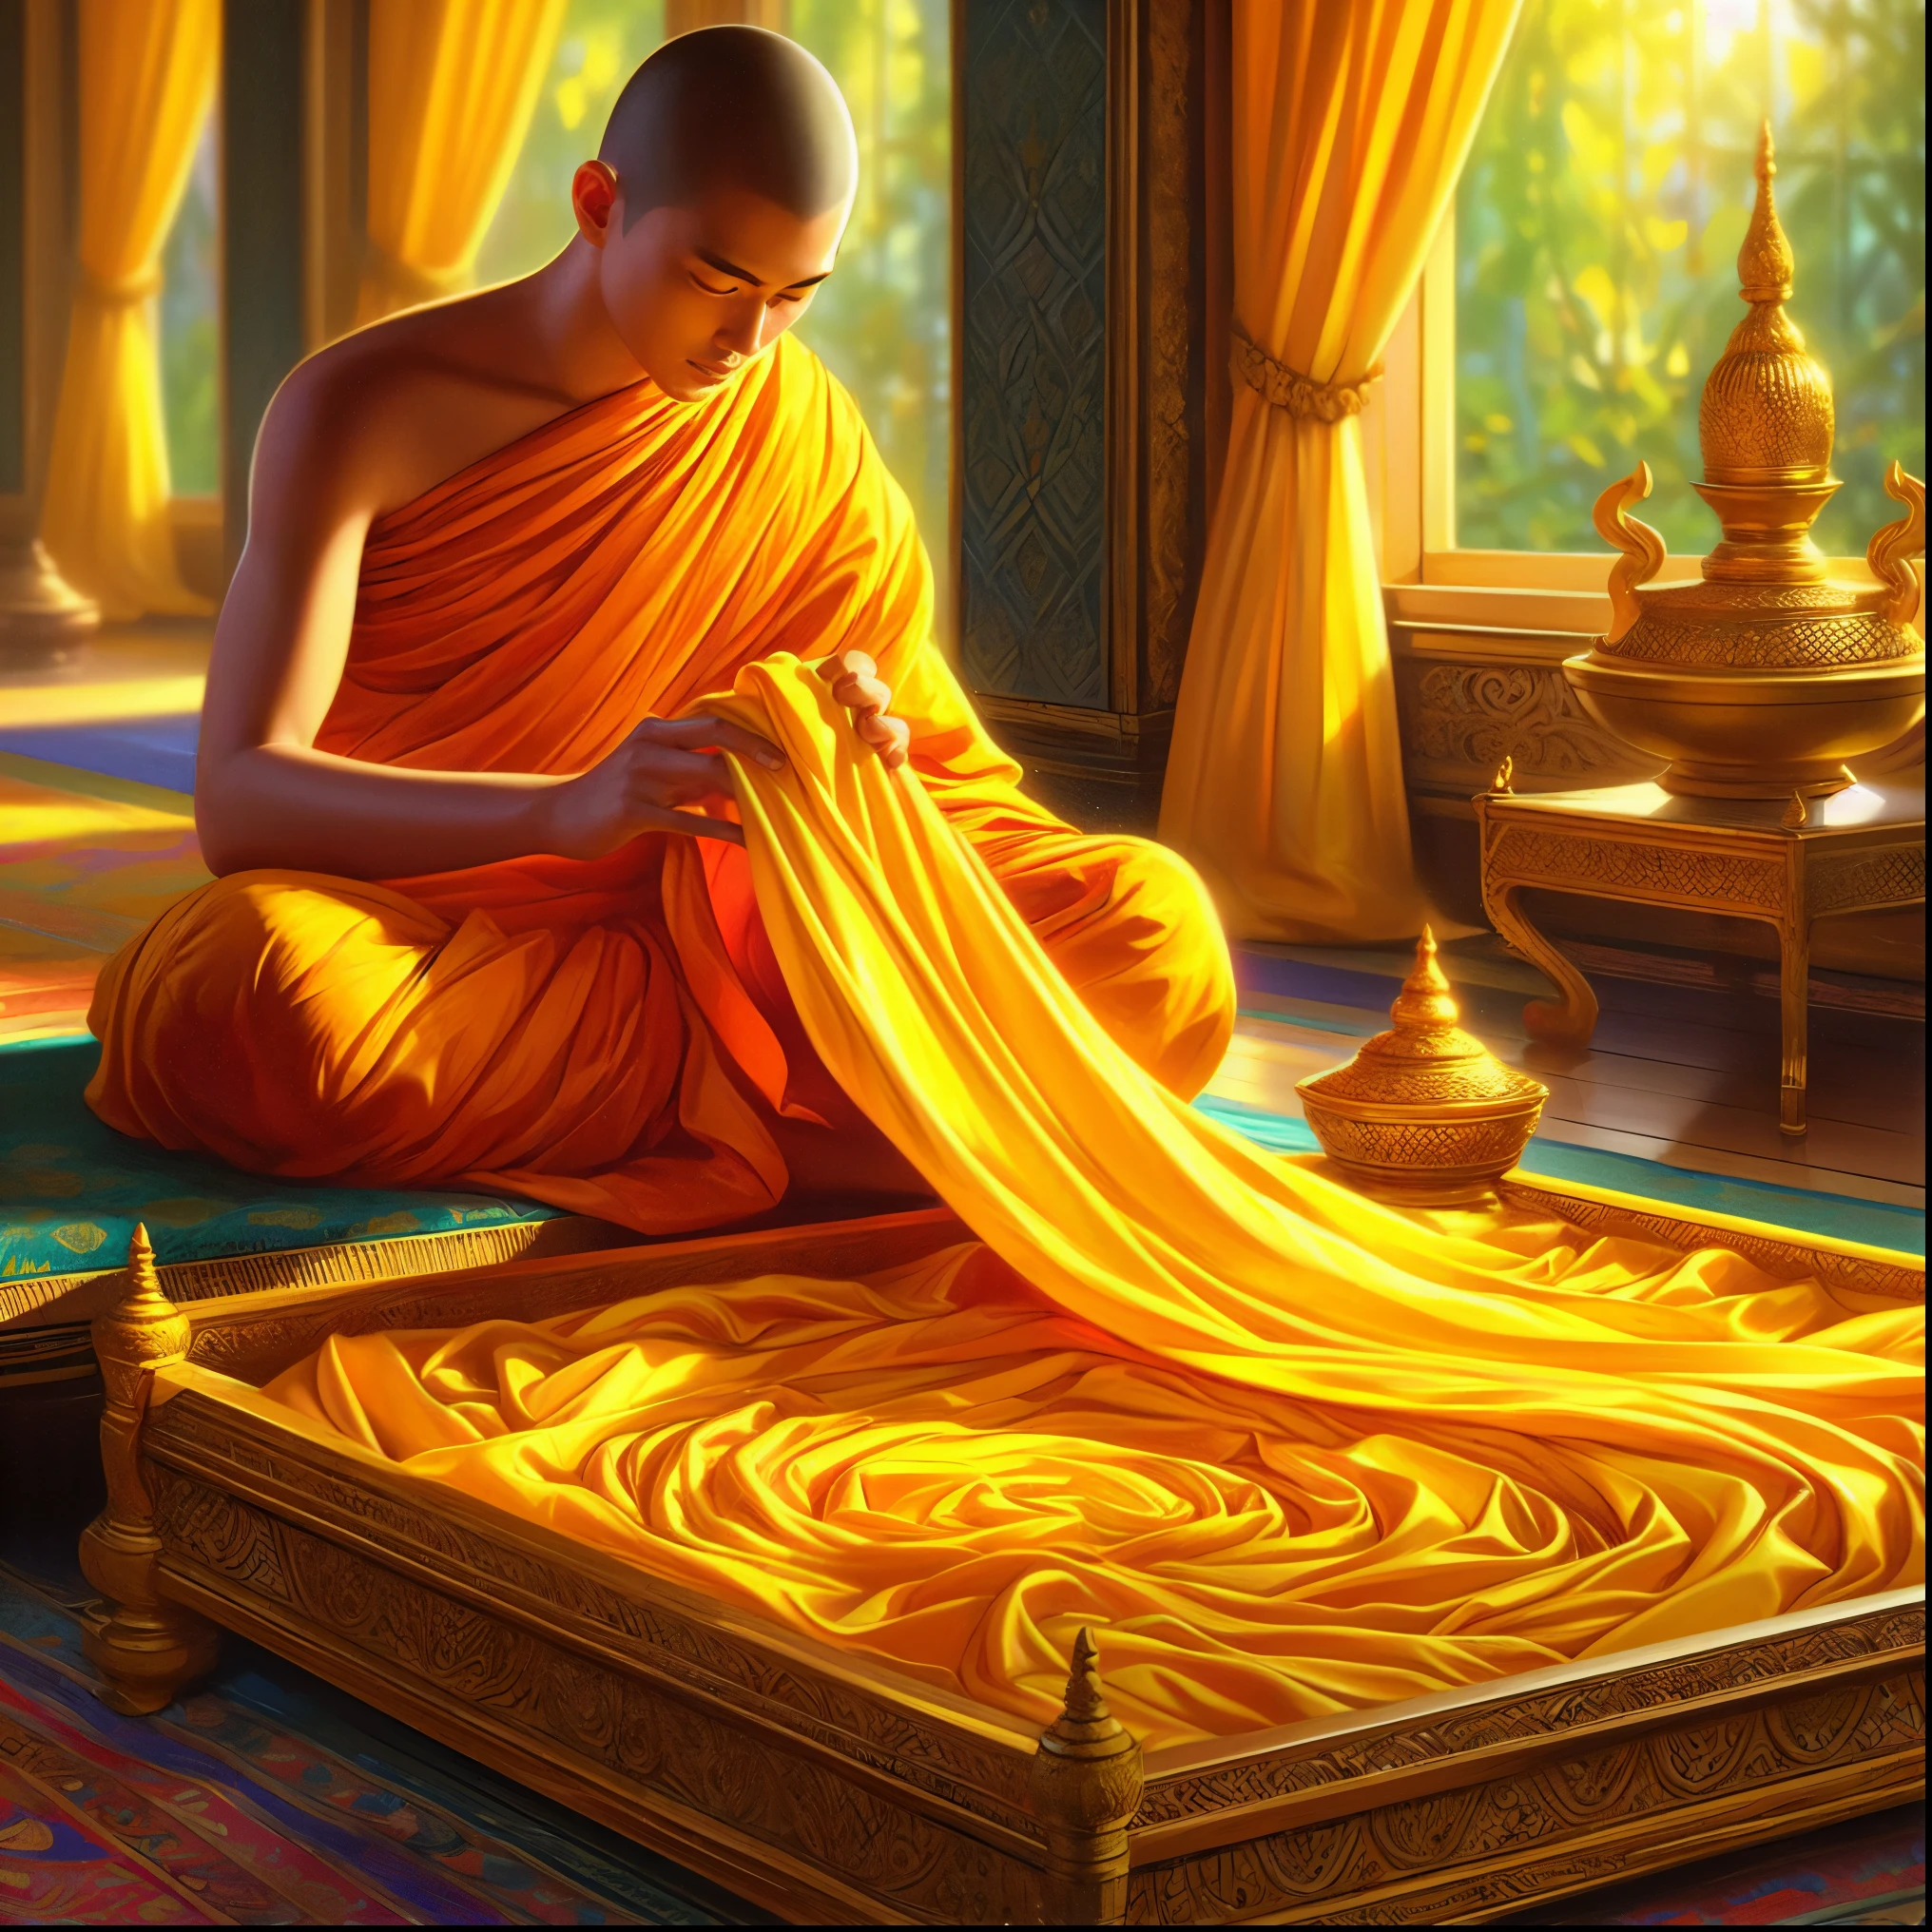 特写镜头：一个人坐在地板上，身旁铺着一块黄布, 僧袍, 僧衣, 现实的涟漪结构, 金色长袍, 僧人打坐, 佛教徒 monk, 佛教徒 monk meditating, 蒂蒂路德通, 金布, 黄色长袍s, 泰国艺术, 黄色长袍, 佛教徒, 轮回, 用黄色的布, 佛教徒 art, 精美描绘